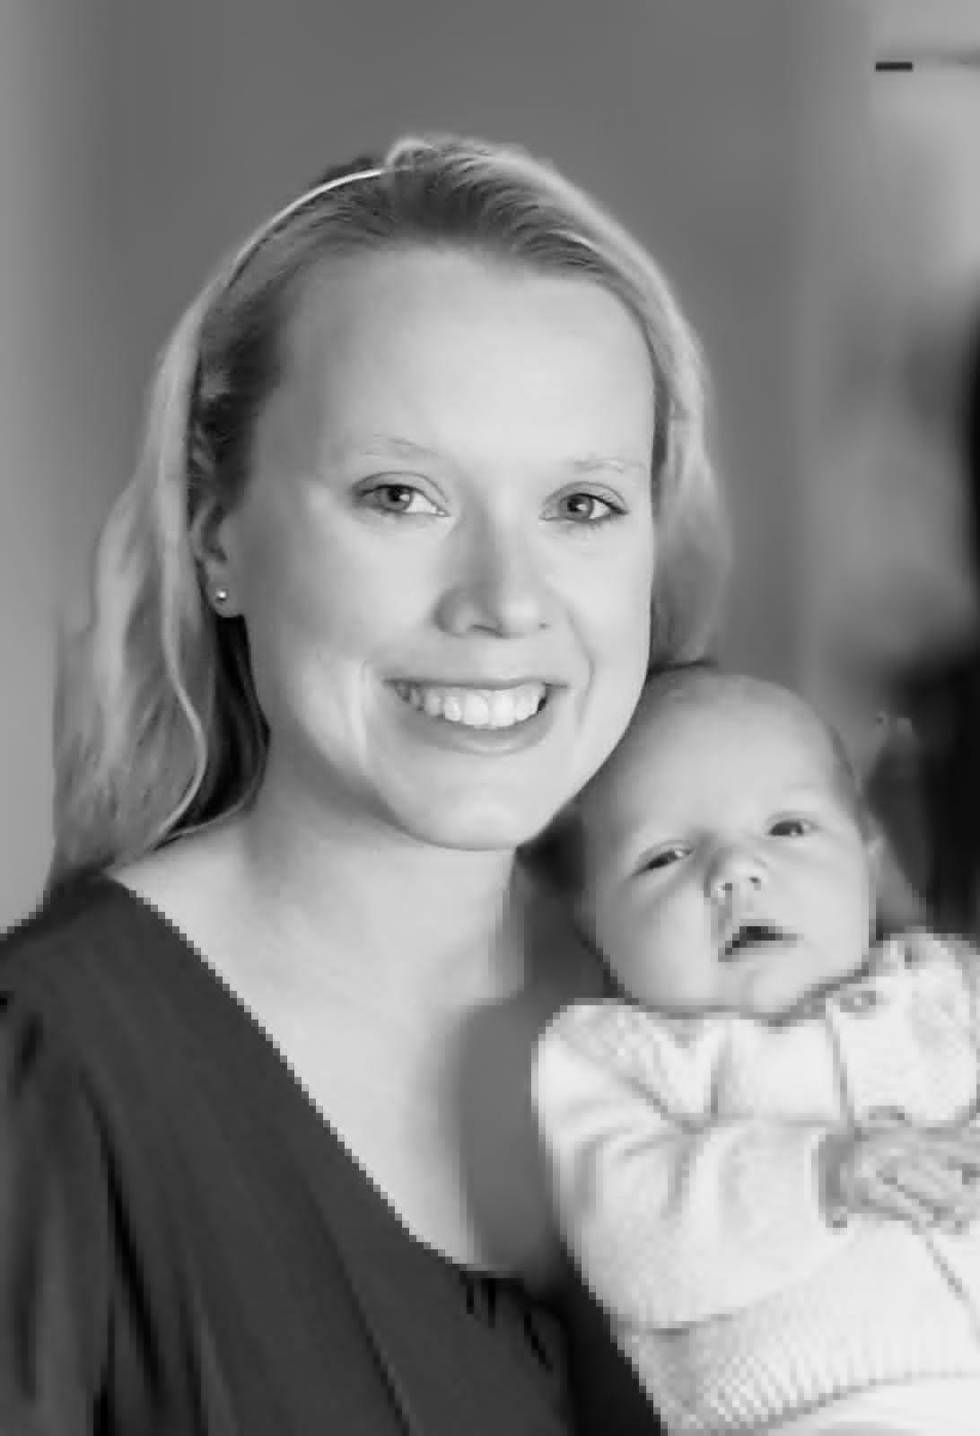 Cecilia Ingulstad opplevde at hun og hennes nyfødte baby ble overlatt til seg selv etter fødselen. Hun mener smitteverntiltakene på fødeavdelingene går på bekostning av mor og barn. Bildet er et illustrasjonsfoto.